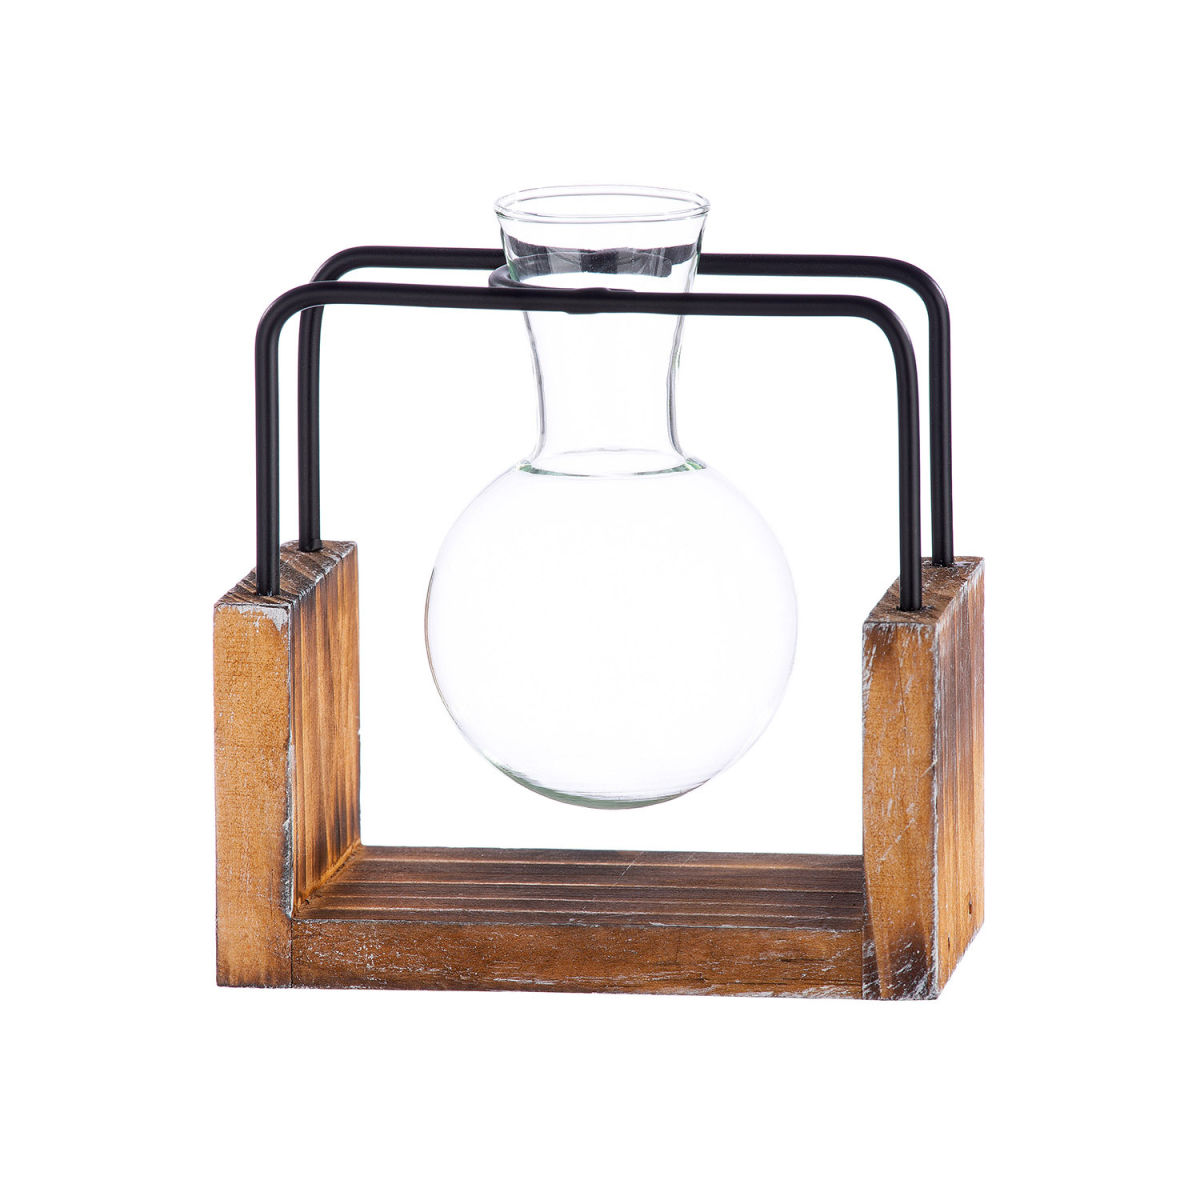 gilde hÃ¤nge-vase mit reagenzglas bauchig piston; 9.5x10.5 cm (bxh); /schwarz; 4 stÃ¼ck / packung natur